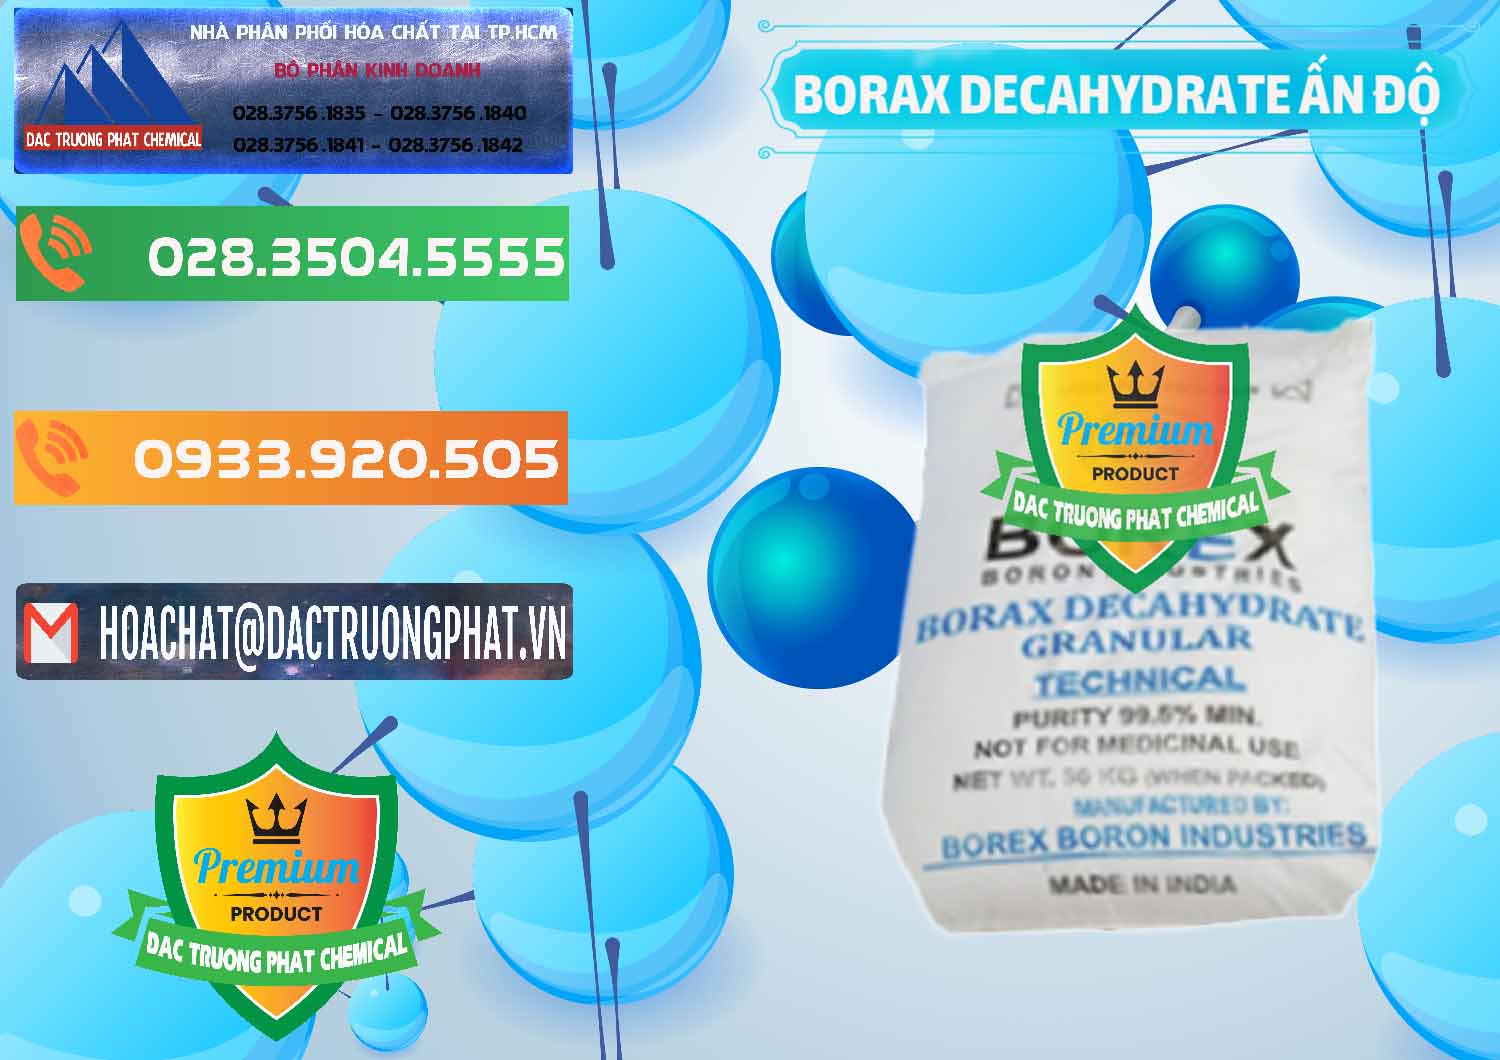 Cty chuyên bán - cung cấp Borax Decahydrate Ấn Độ India - 0449 - Đơn vị chuyên cung cấp & nhập khẩu hóa chất tại TP.HCM - hoachatxulynuoc.com.vn